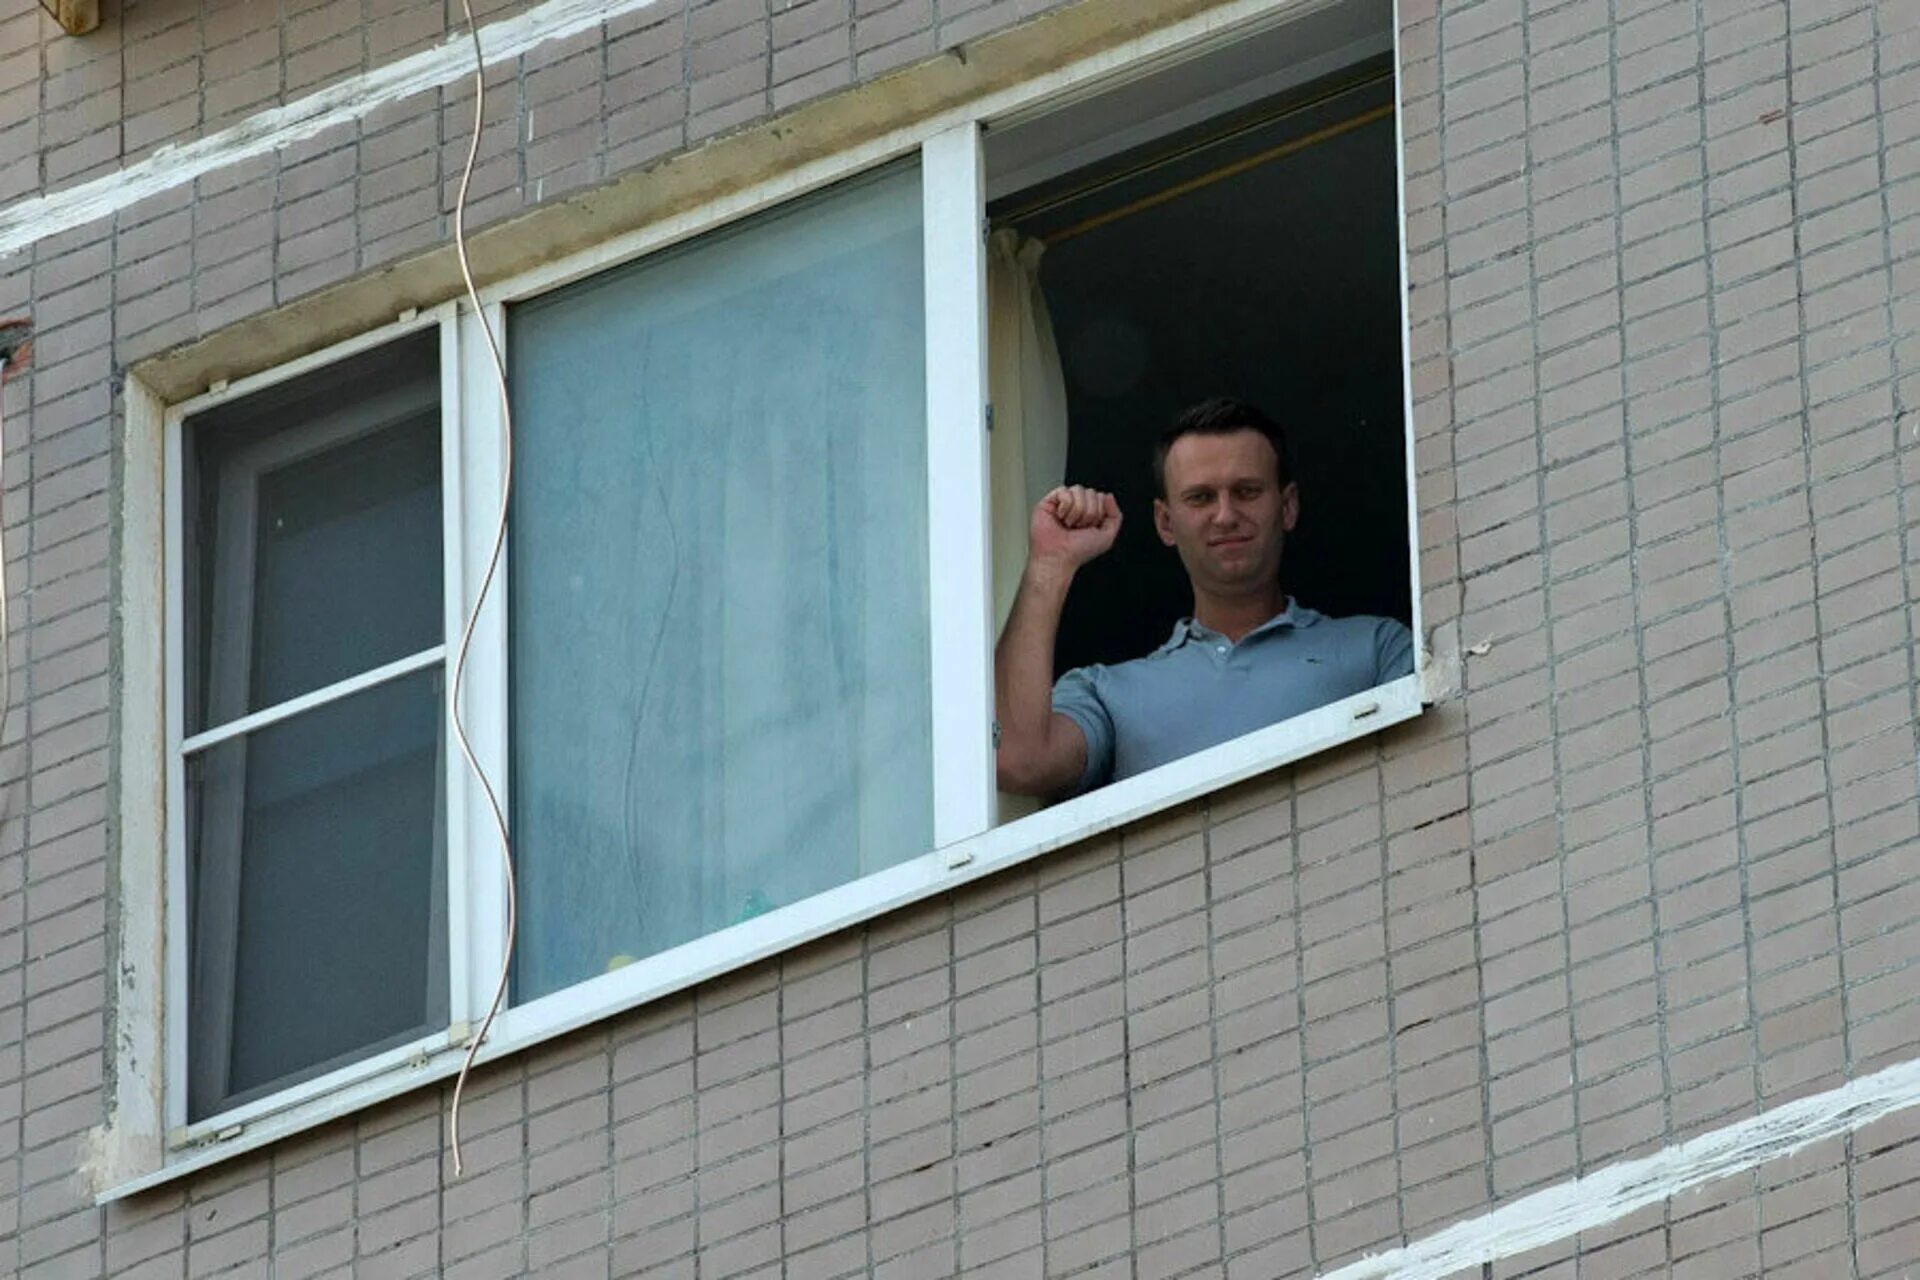 Дом Алексея Навального. Дом Навального в Марьино. Навальный в окне. Человек у окна. Навальный жил в москве